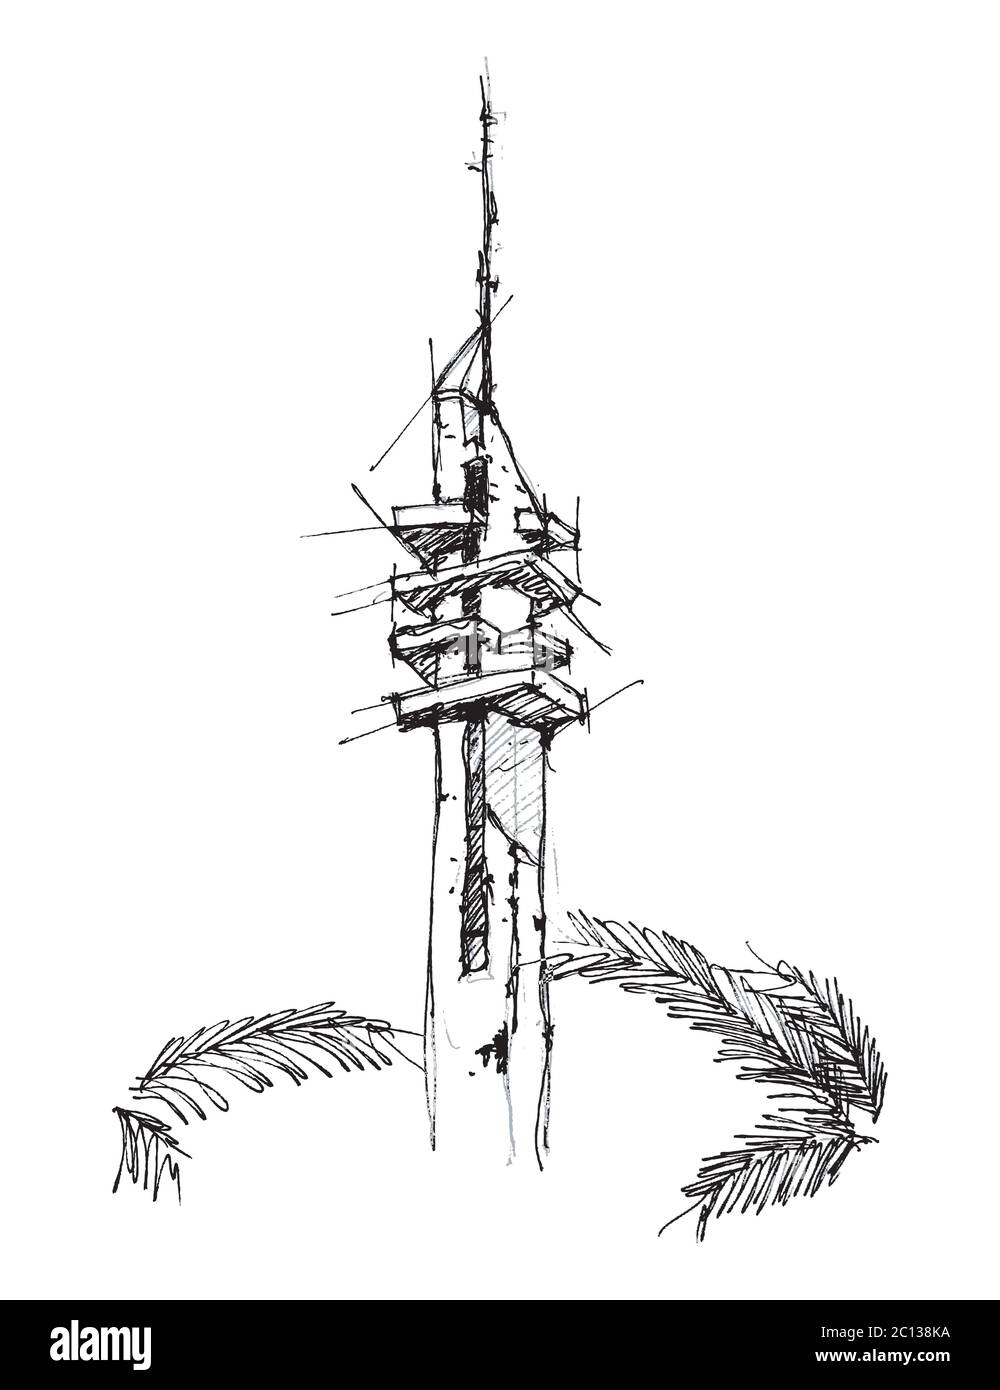 Handgezeichnete Skizzendarstellung des Marganit-Turms, einem Wahrzeichen in Tel Aviv, Israel. Stock Vektor